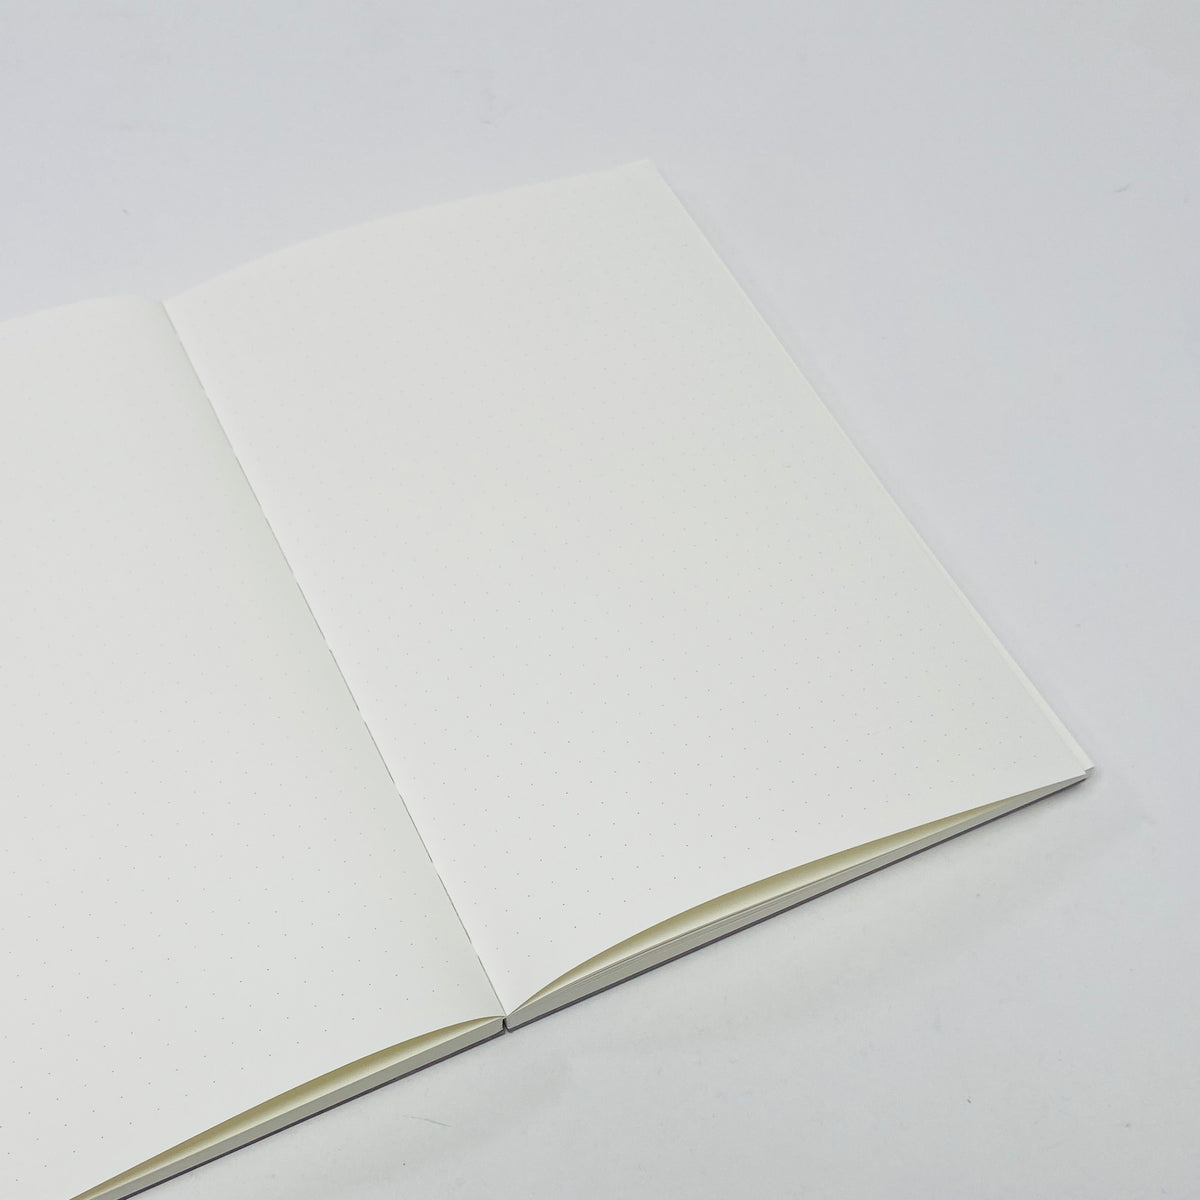 Pith Yuzu Notebook Grey - Dot Grid